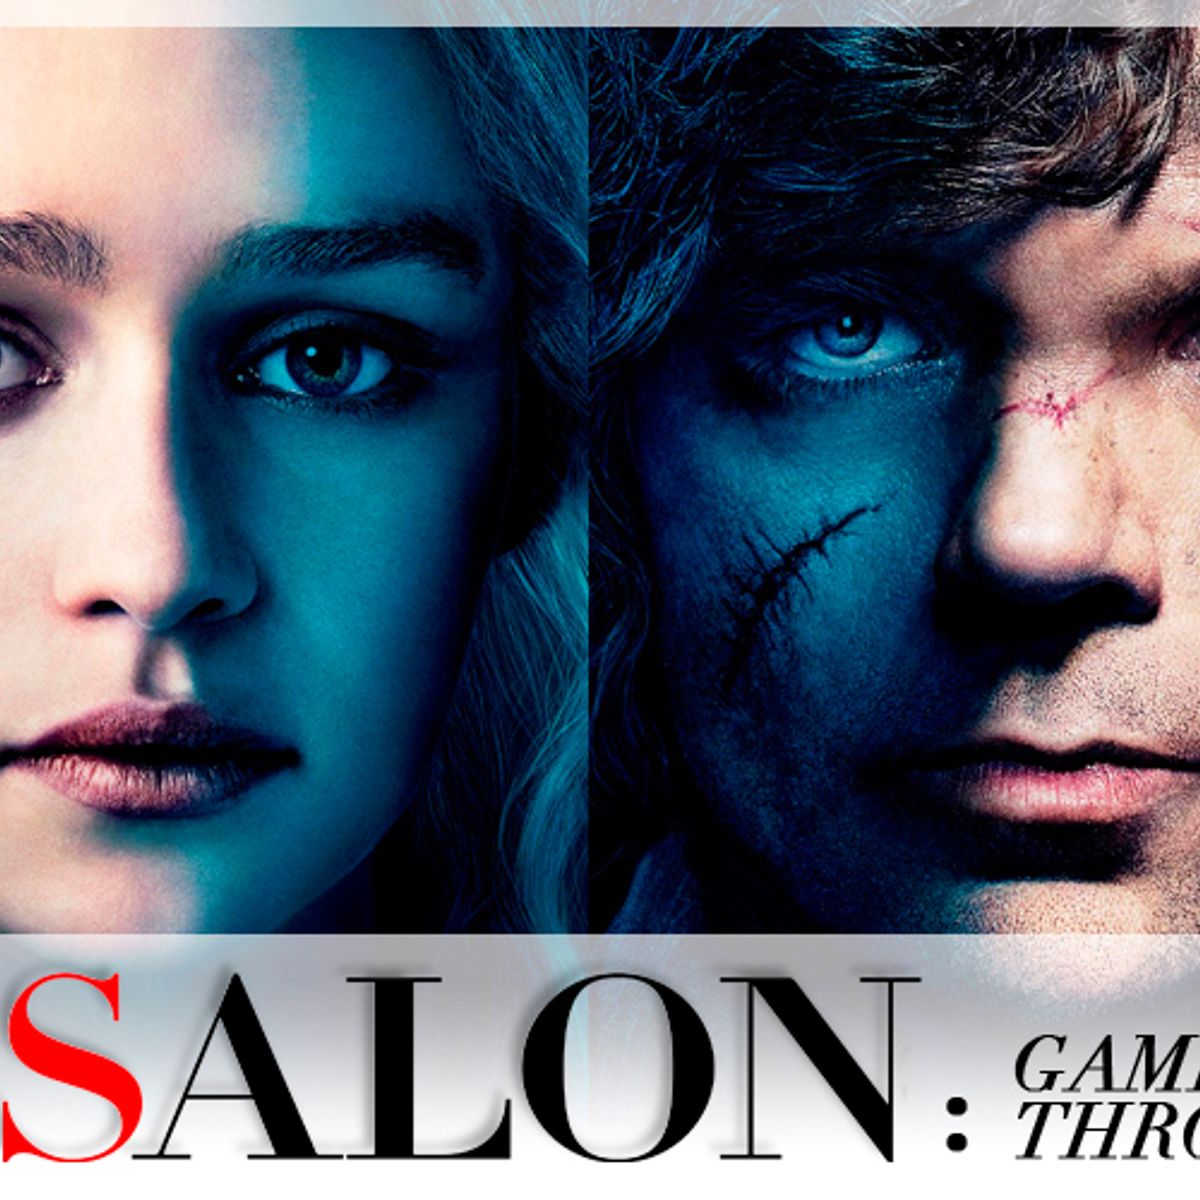 Game Of Thrones Season 3 Episode 8 A Salon Salon Com